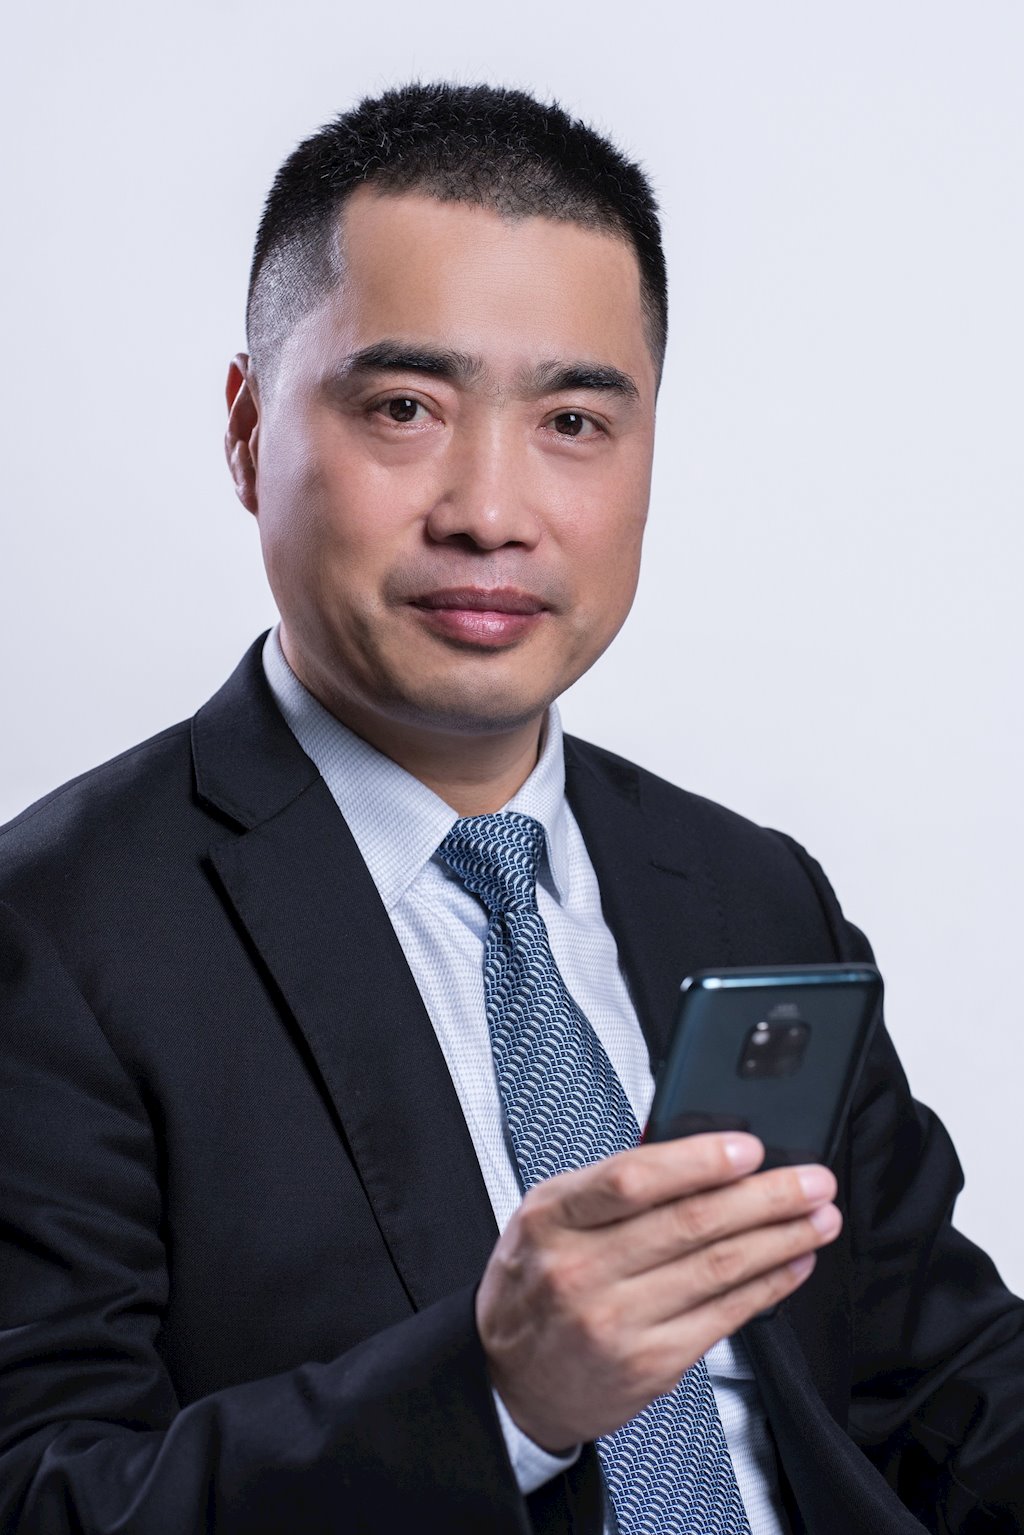 CEO Huawei Việt Nam: “Việt Nam muốn hiện thực hóa 5G cần 4 điều kiện cơ bản”